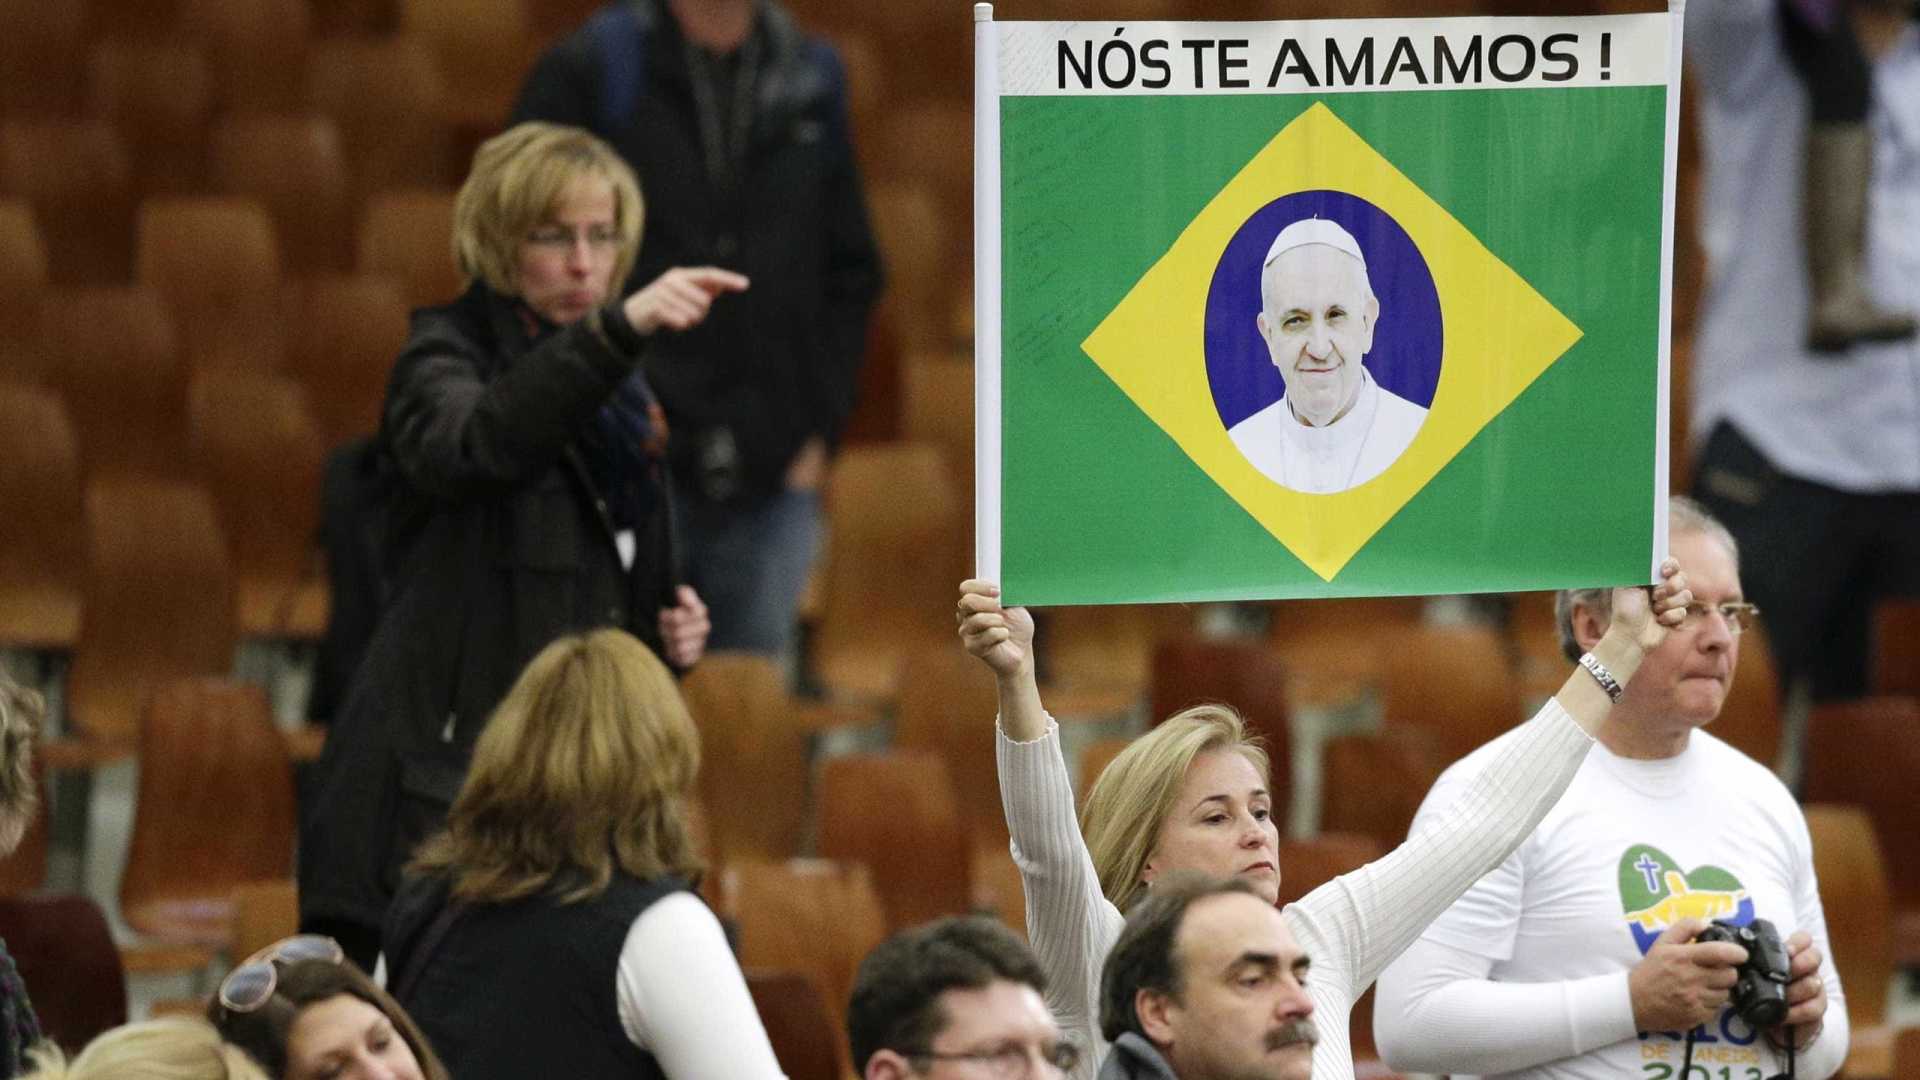 Brasileiros manifestam sentimento de amor ao Papa Francisco